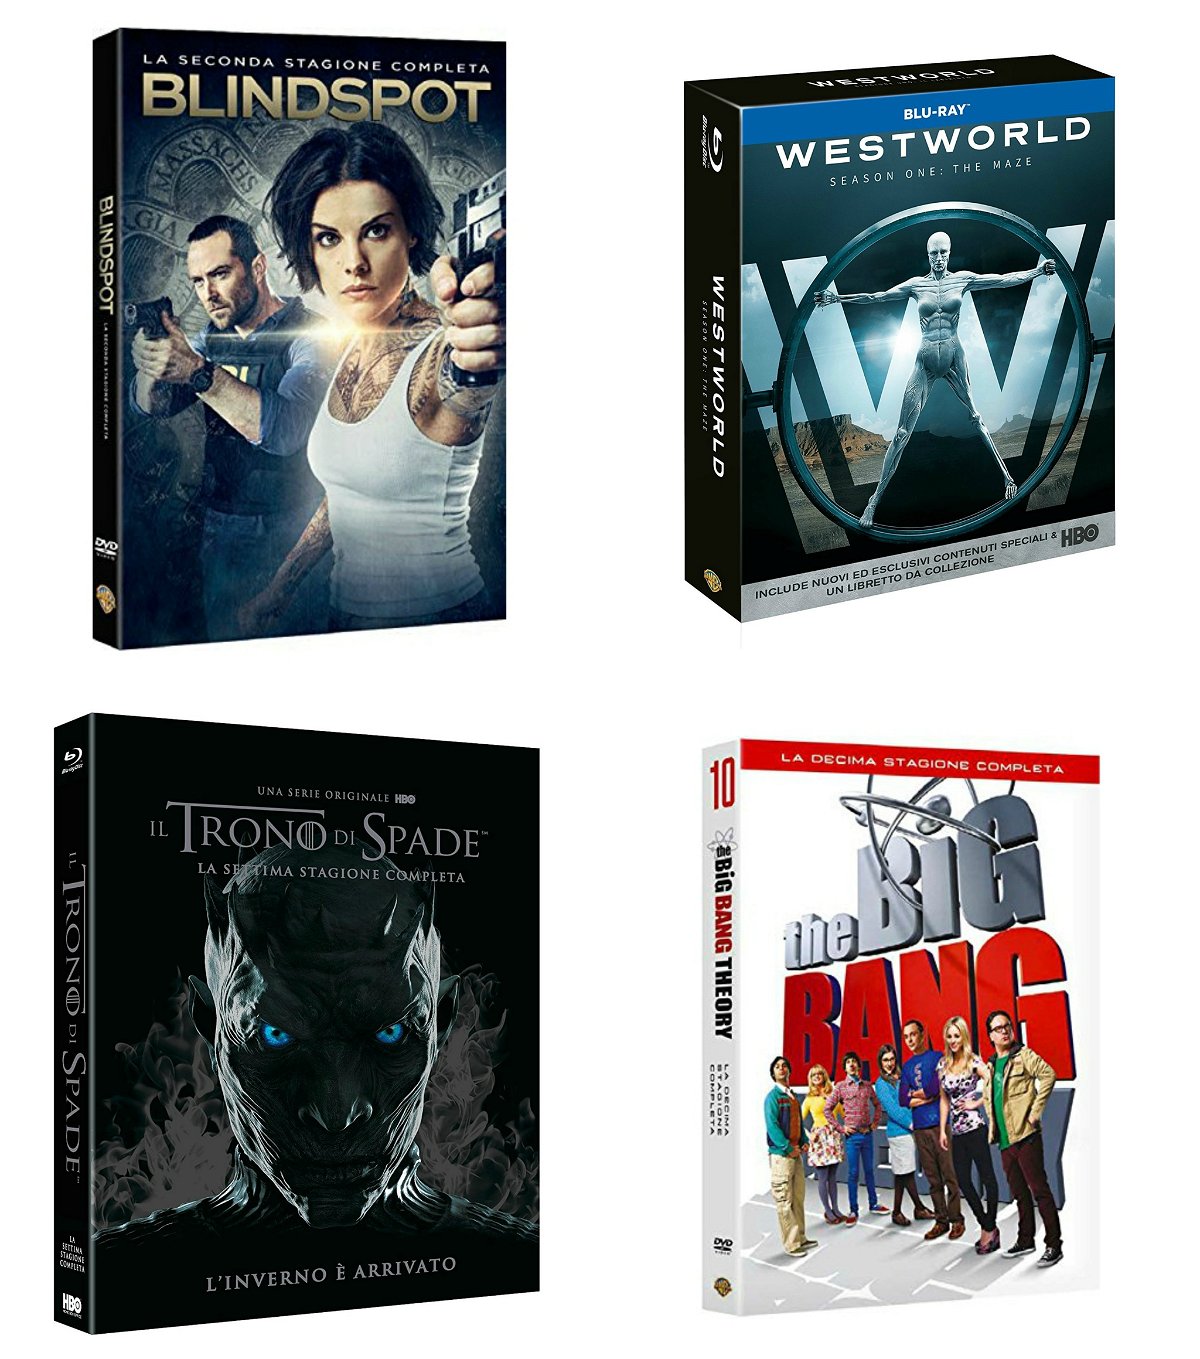 Le quattro serie TV targate Warner Bros. in uscita in home video a dicembre